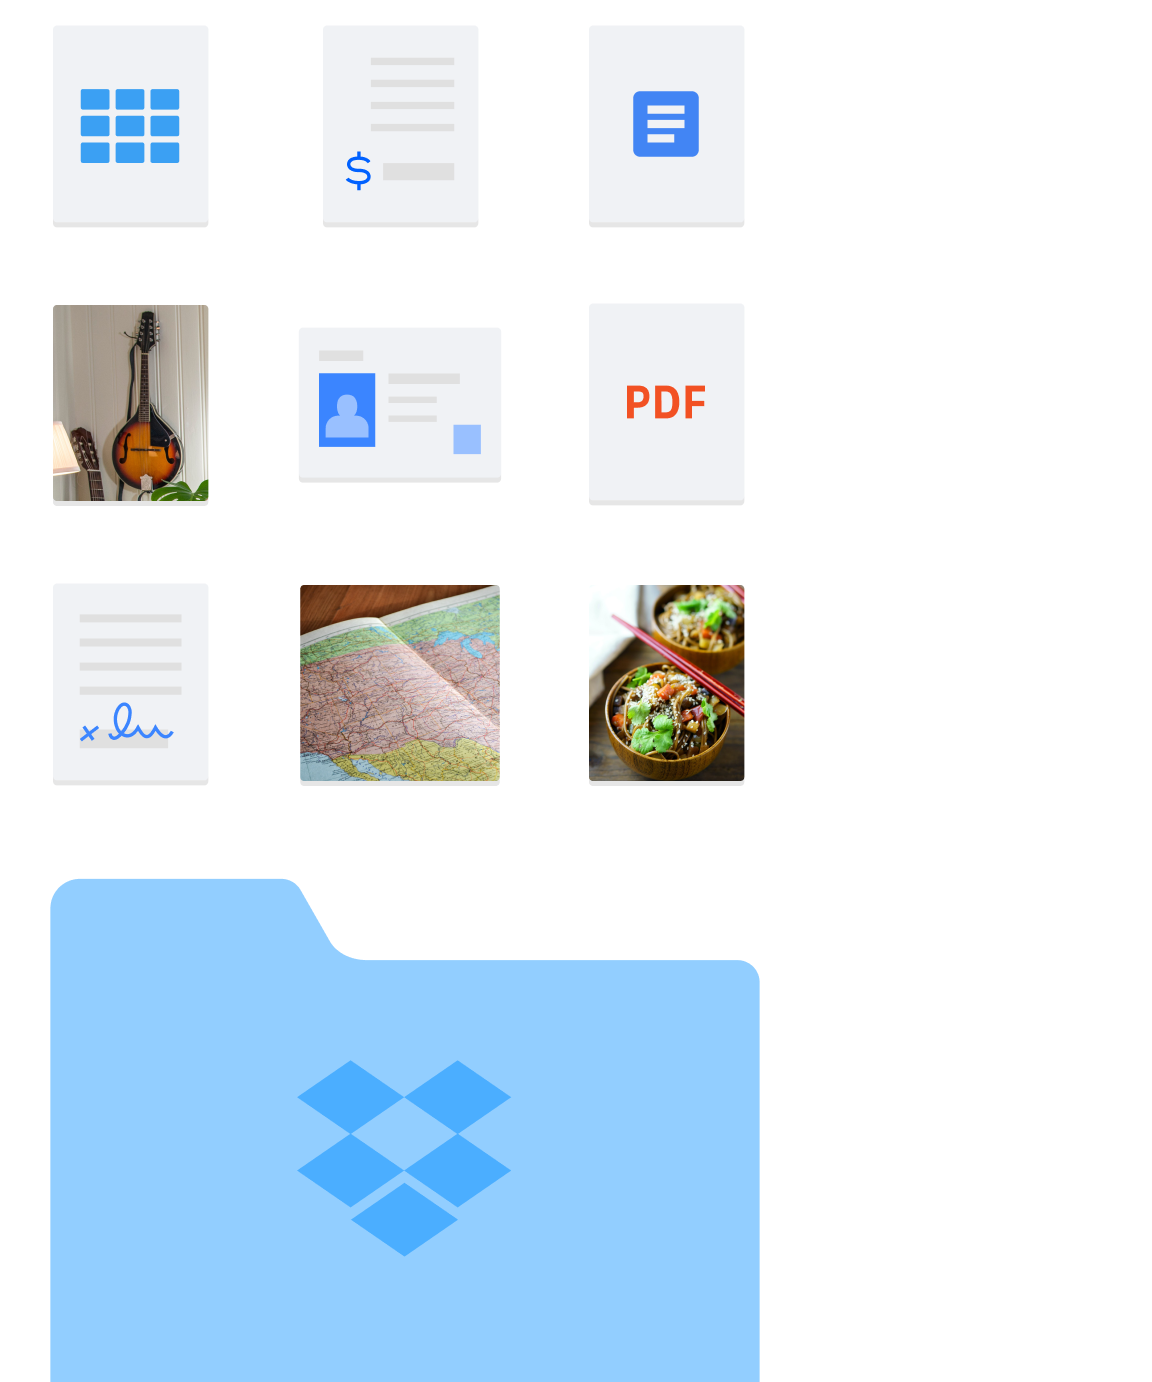 Image d'un dossier Dropbox et de différents types de fichiers, comme des images et des documents